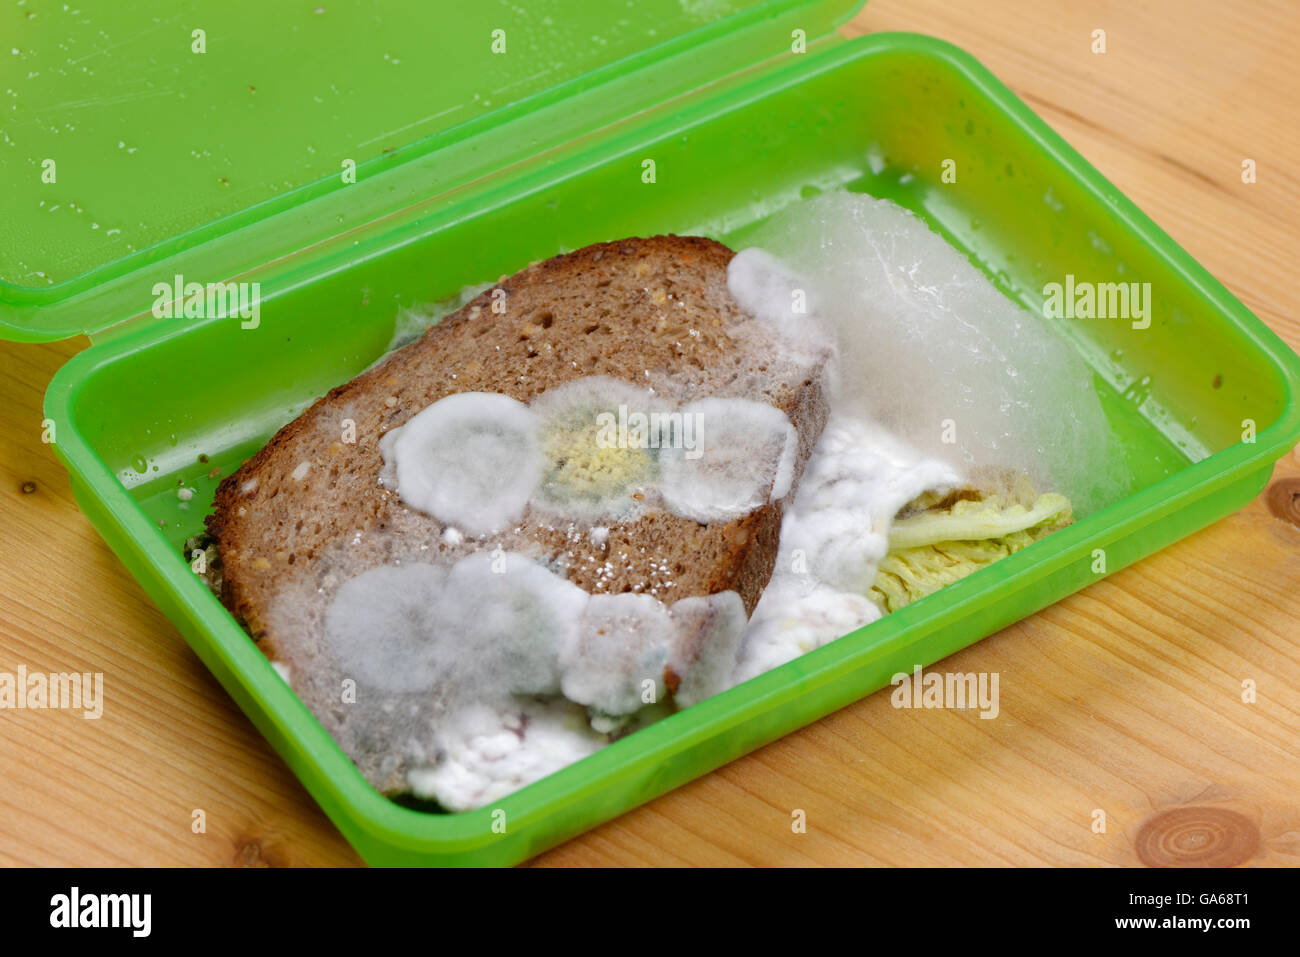 Verschimmelte Brot in Lunchbox, Schimmel an Lebensmittel, Upper Bavaria,  Bavaria, Germany Stockfotografie - Alamy